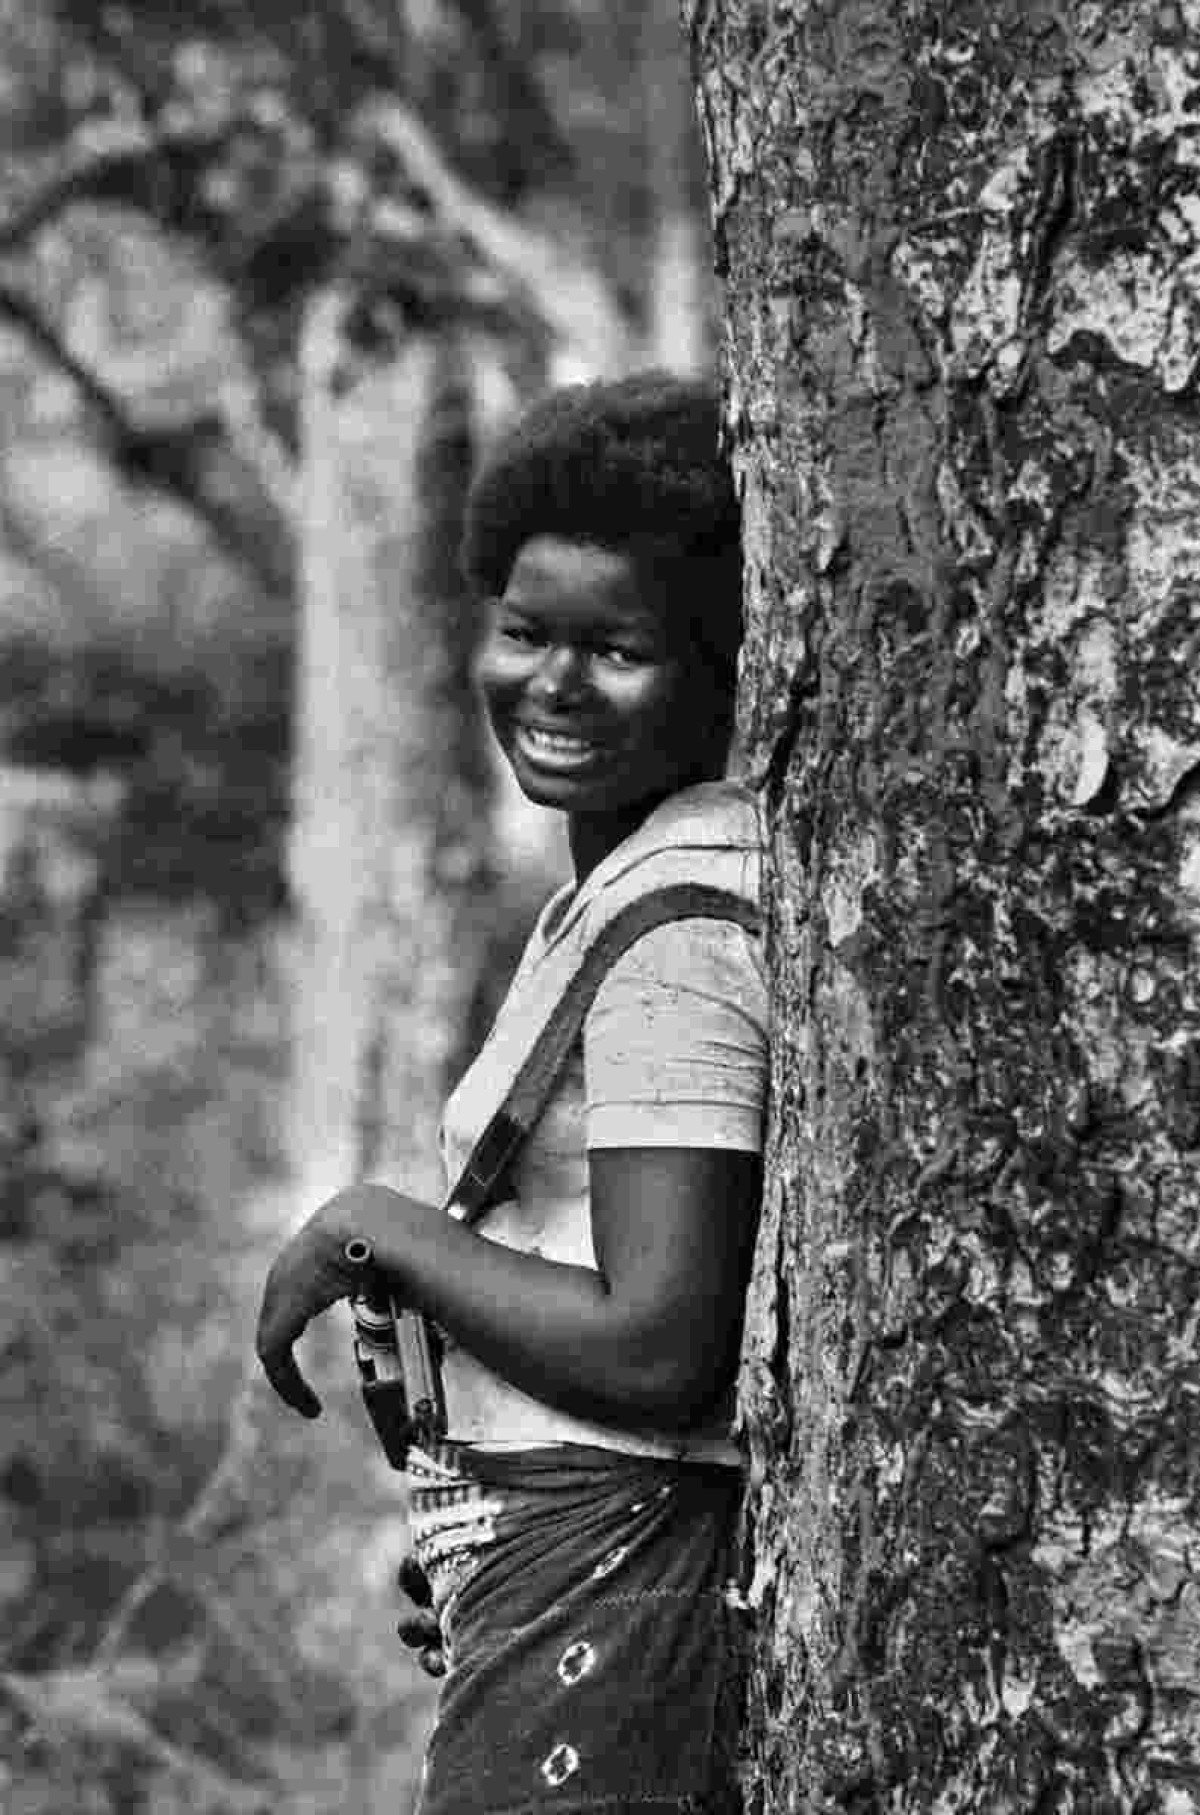  Militância do Paigc na floresta de Guiné-Bissau, em 1970  Exposição Revoluções — – Guiné-Bissau, Angola e Portugal (1969-1974), de Uliano Lucas, no Museu Nacional da República.  